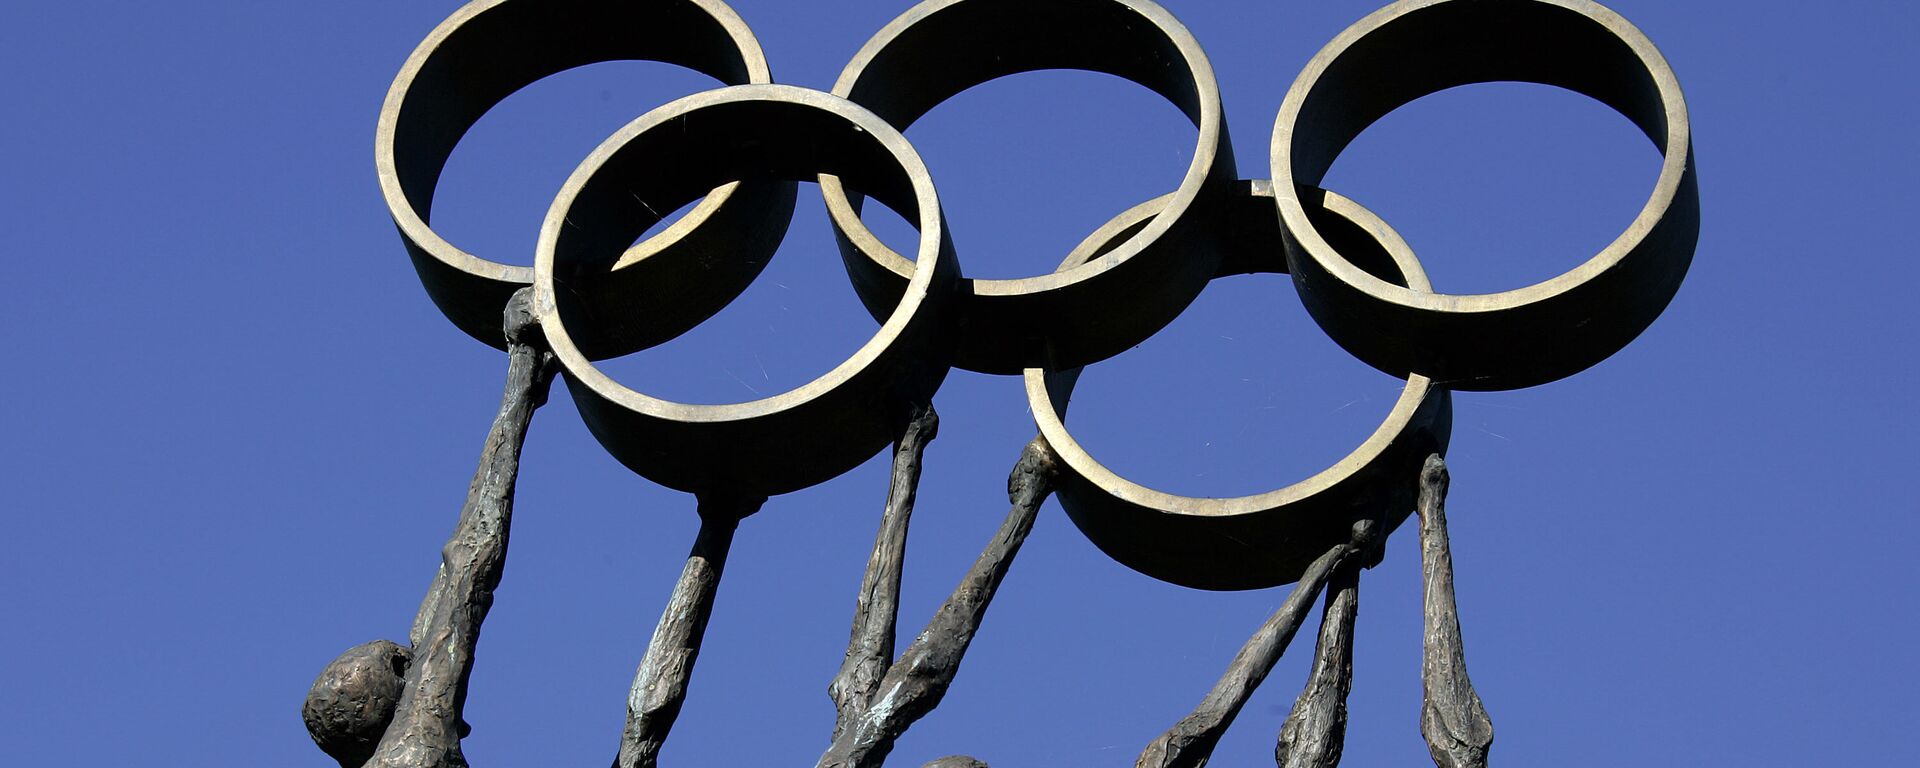 احتمال حذف روسیه از المپیک سال ۲۰۲۰ - اسپوتنیک ایران  , 1920, 02.06.2019